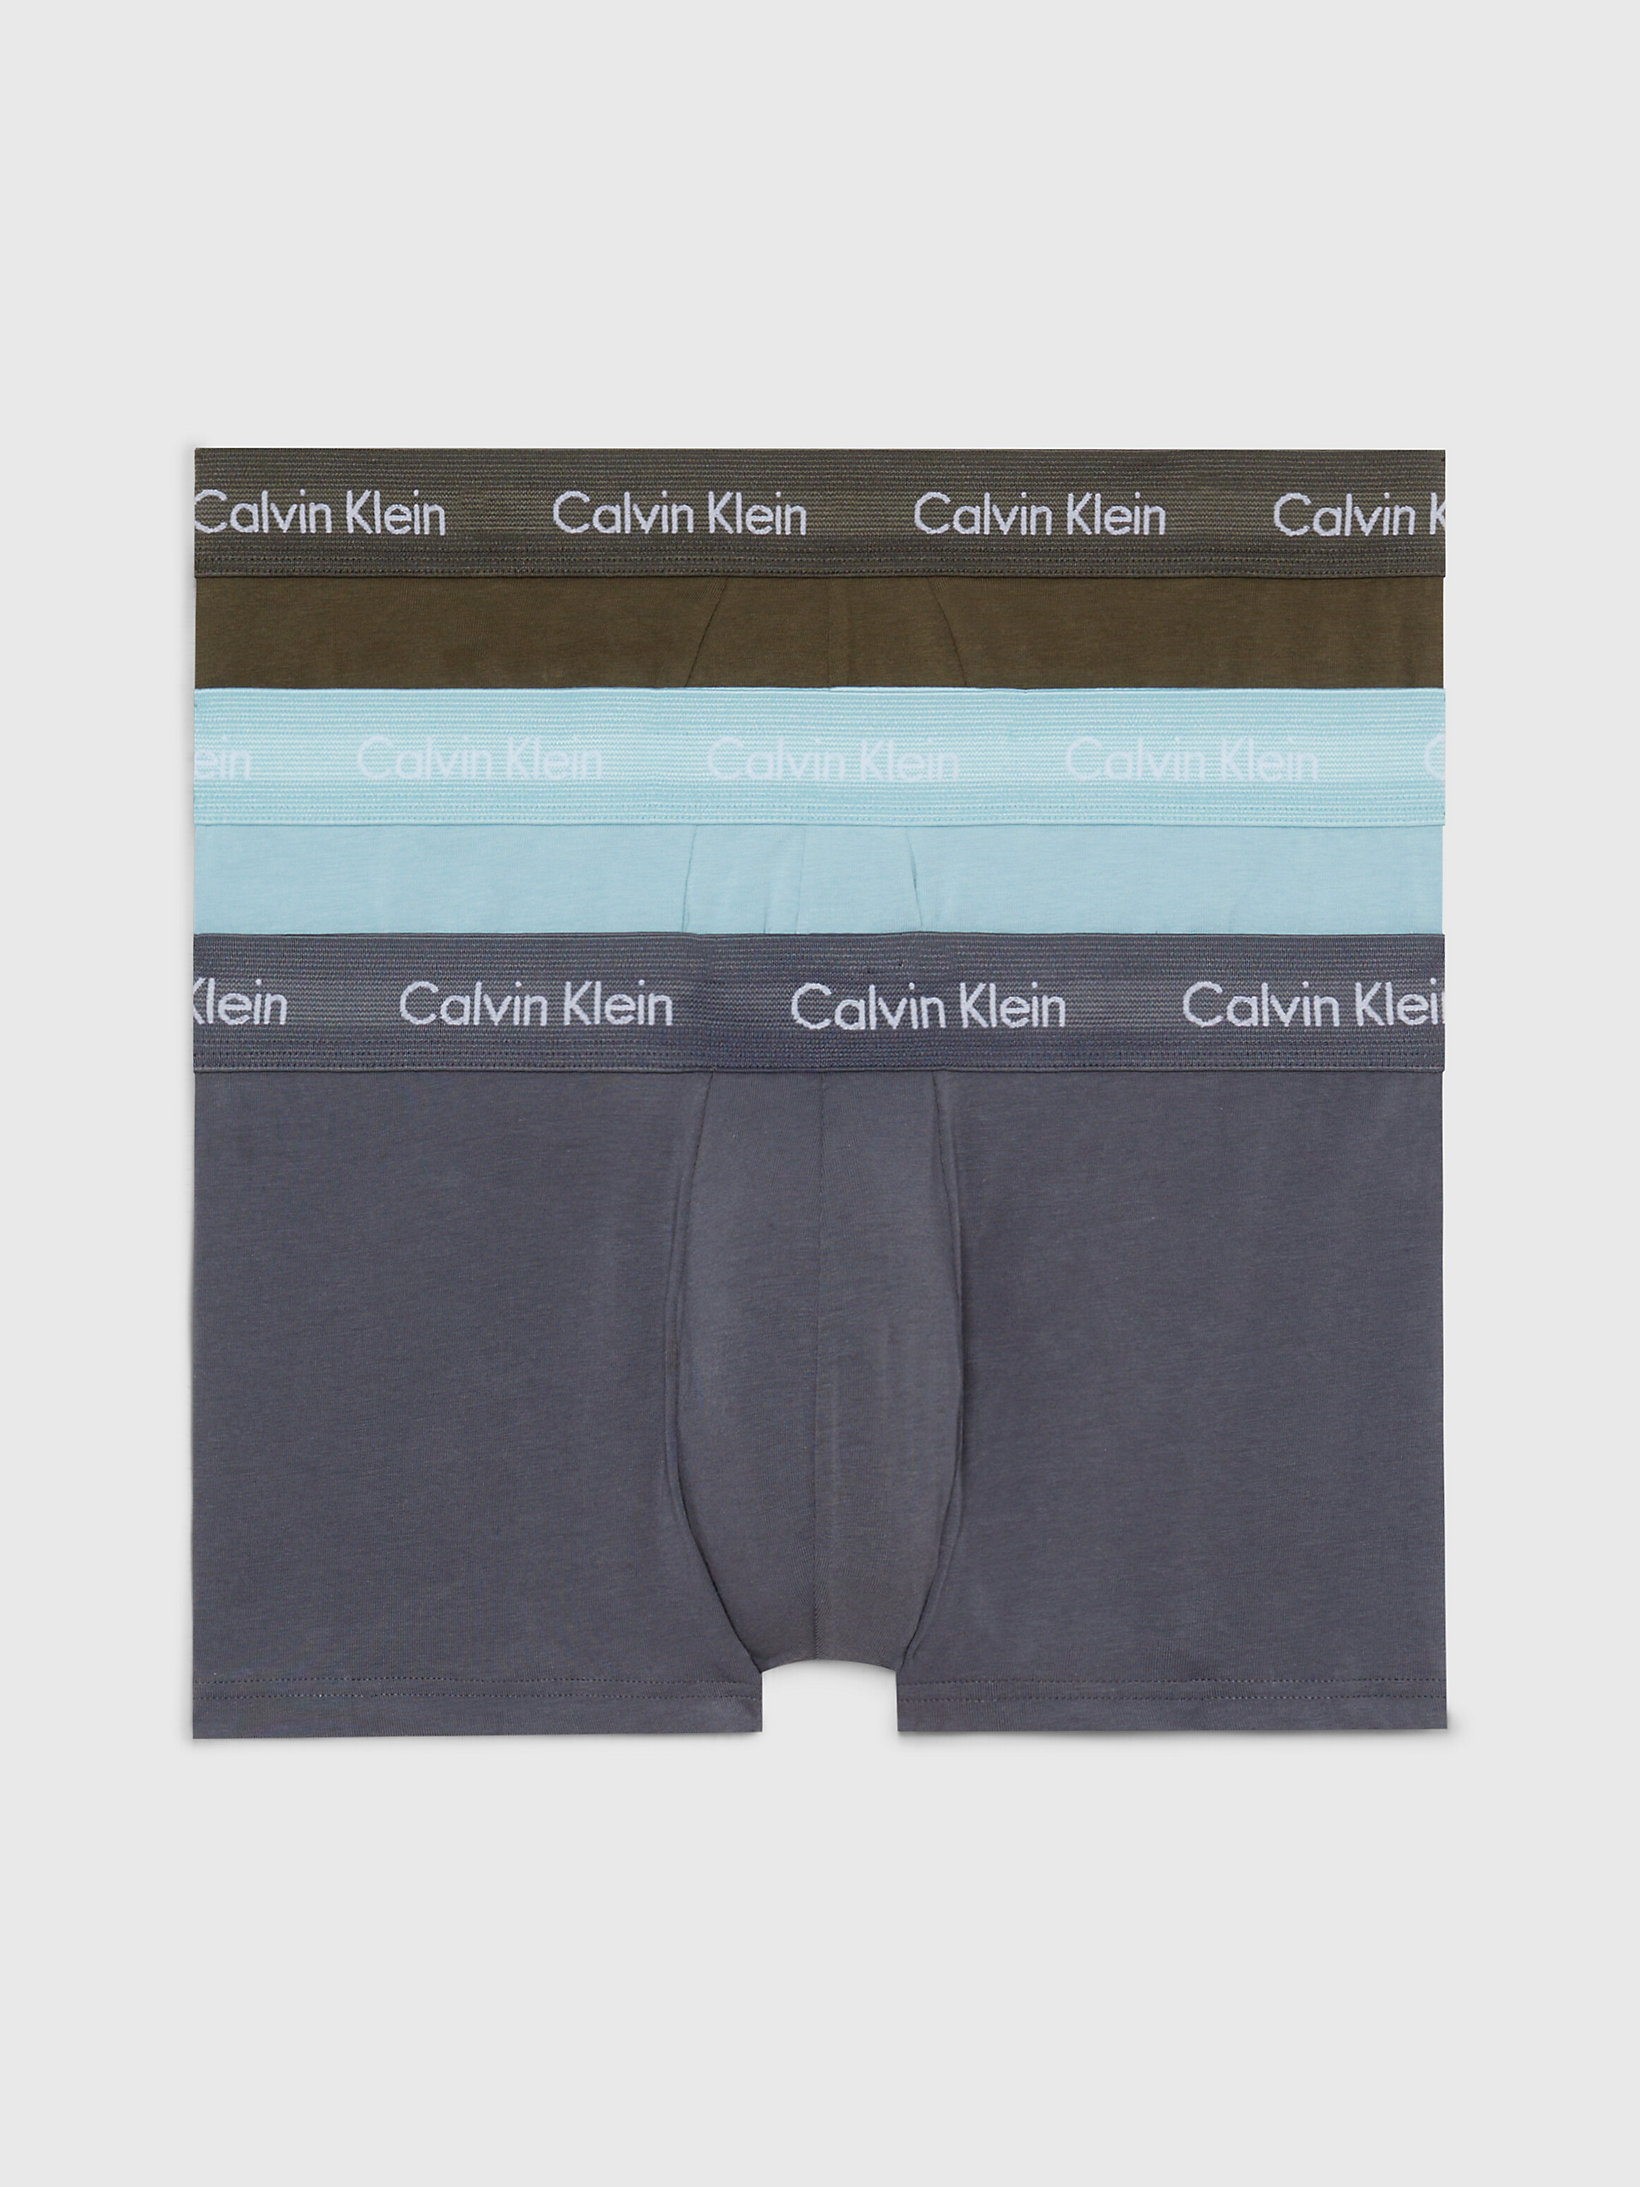 Cotton Stretch Calvin Klein Uomo Abbigliamento Intimo Boxer shorts Boxer shorts aderenti Boxer a vita bassa in confezione da 3 